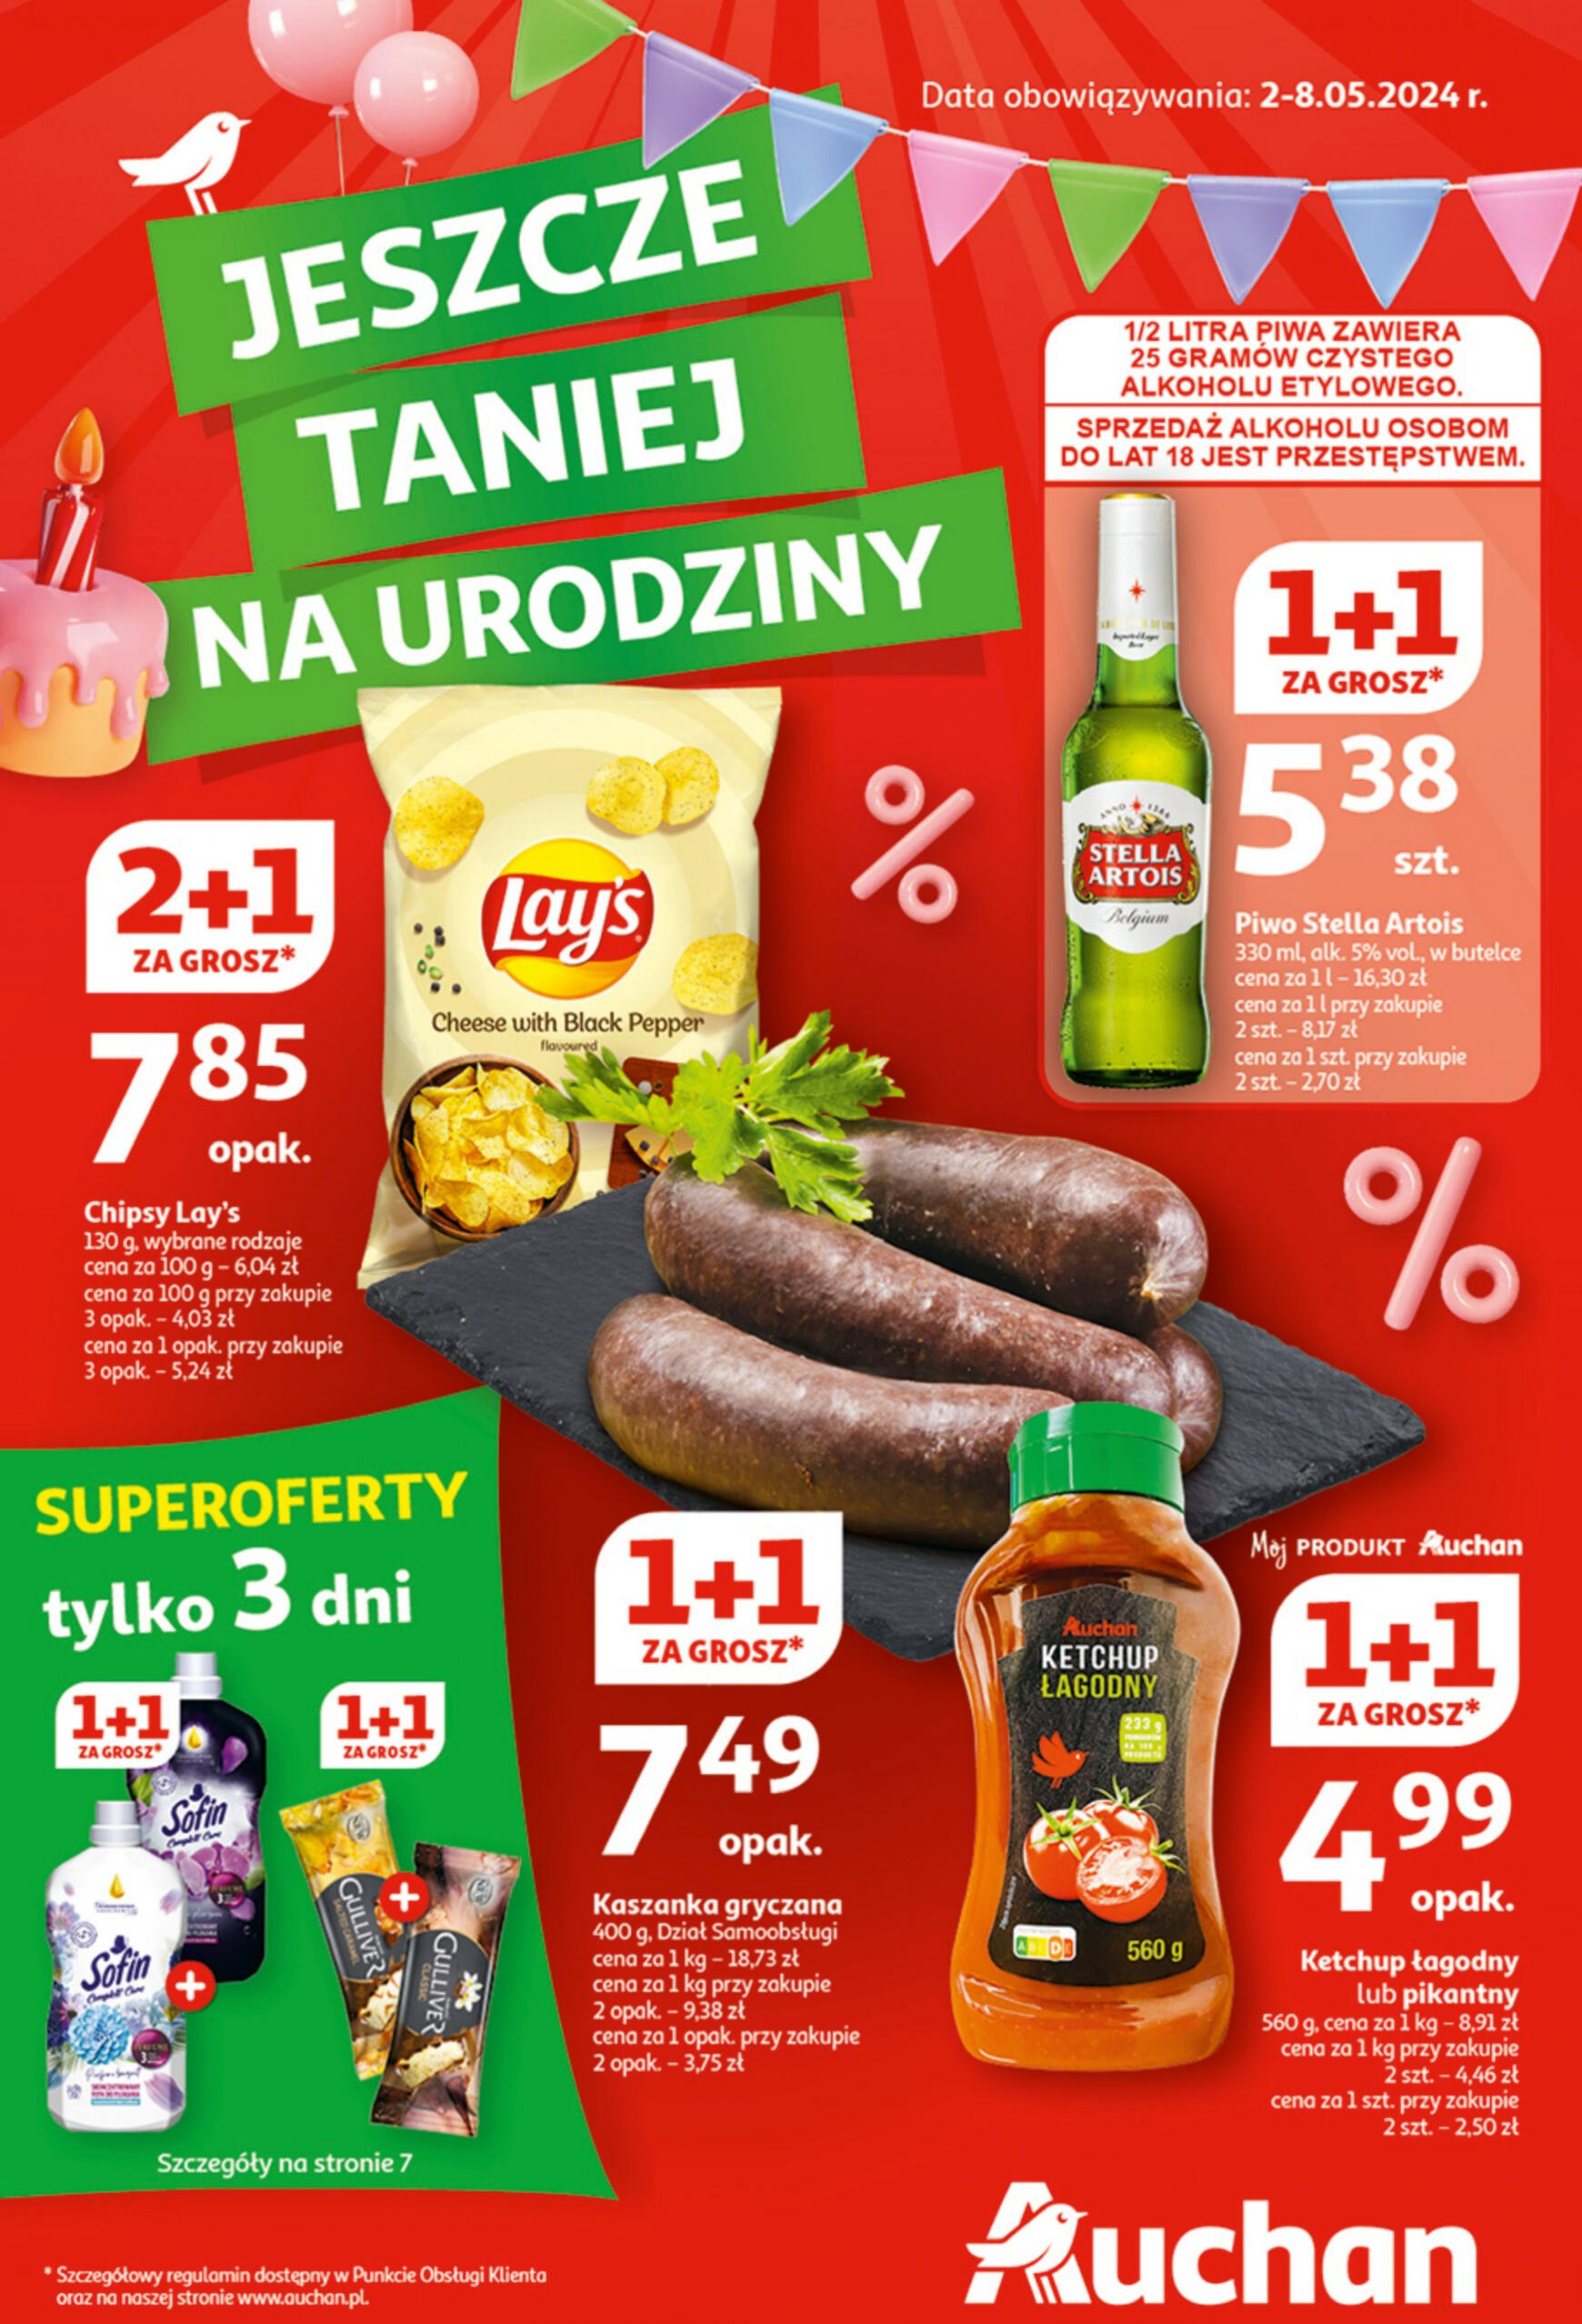 auchan - Hipermarket Auchan - Gazetka Jeszcze taniej na urodziny gazetka aktualna ważna od 02.05. - 08.05. - page: 1